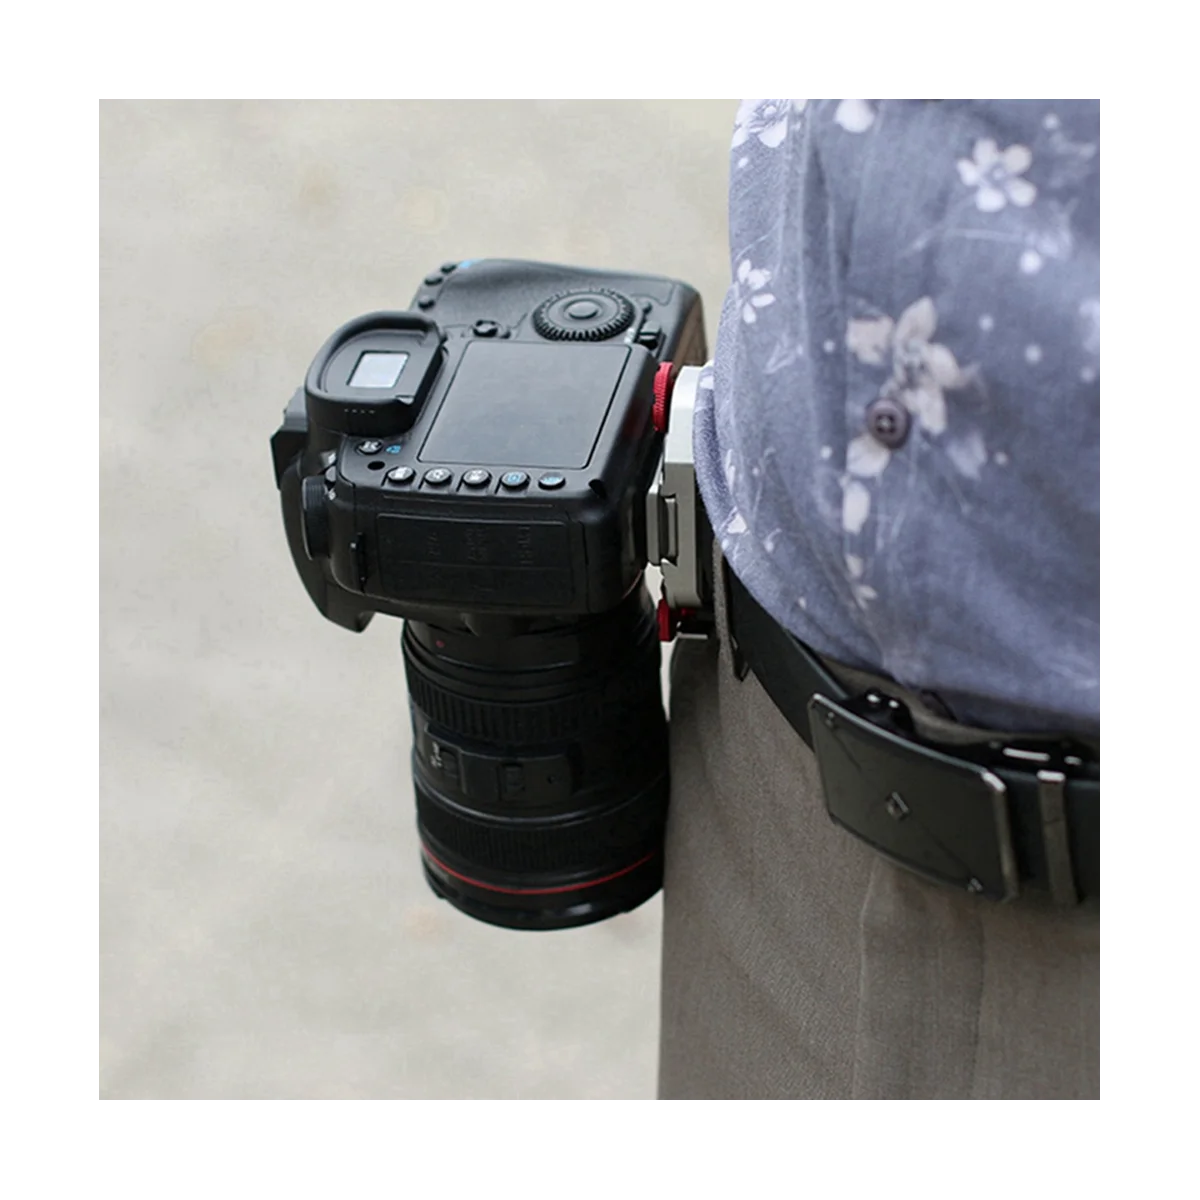 

Наплечный ремень с зажимом аксессуары для спортивной камеры портативный зажим для спортивной камеры, зеленый камуфляж